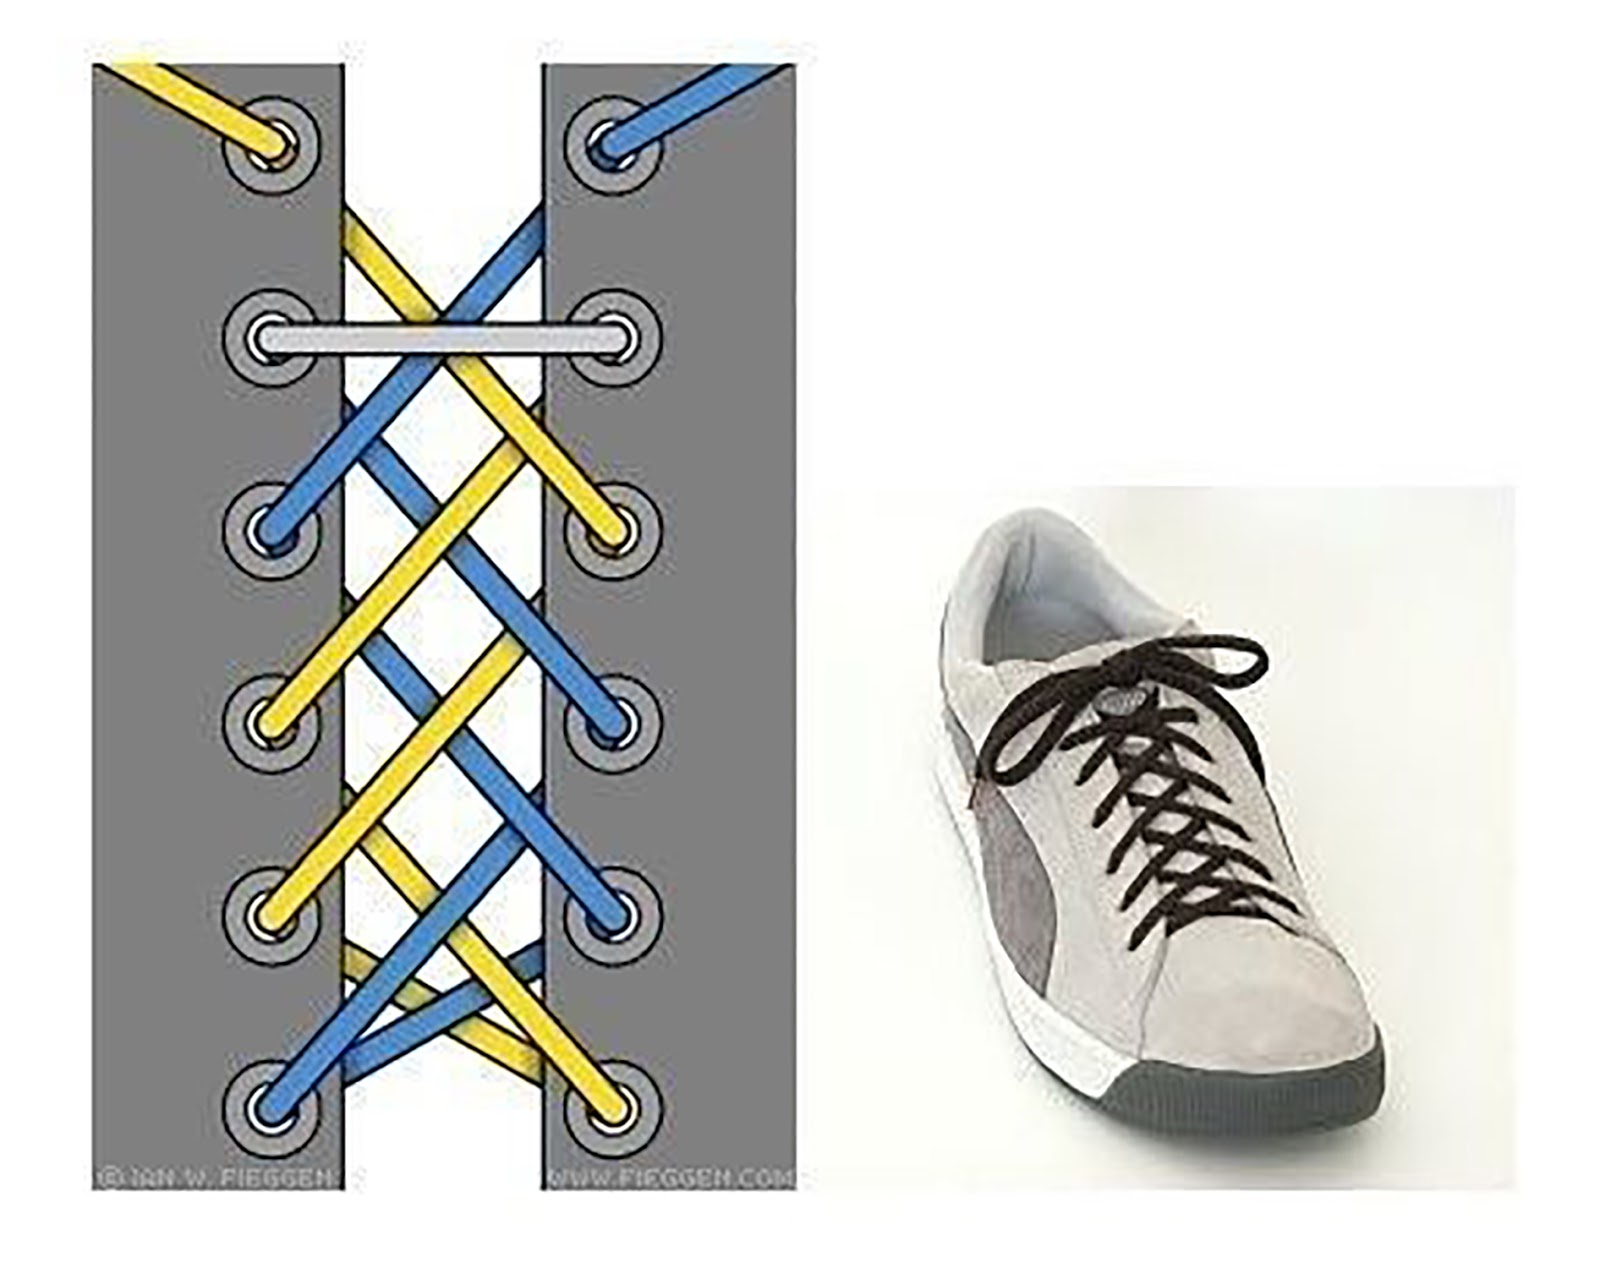 Шнуровка крест накрест изнутри. Способы завязывания шнурков. Красивая шнуровка ботинок. Шнуровка кроссовок. Схема завязывания шнурков.